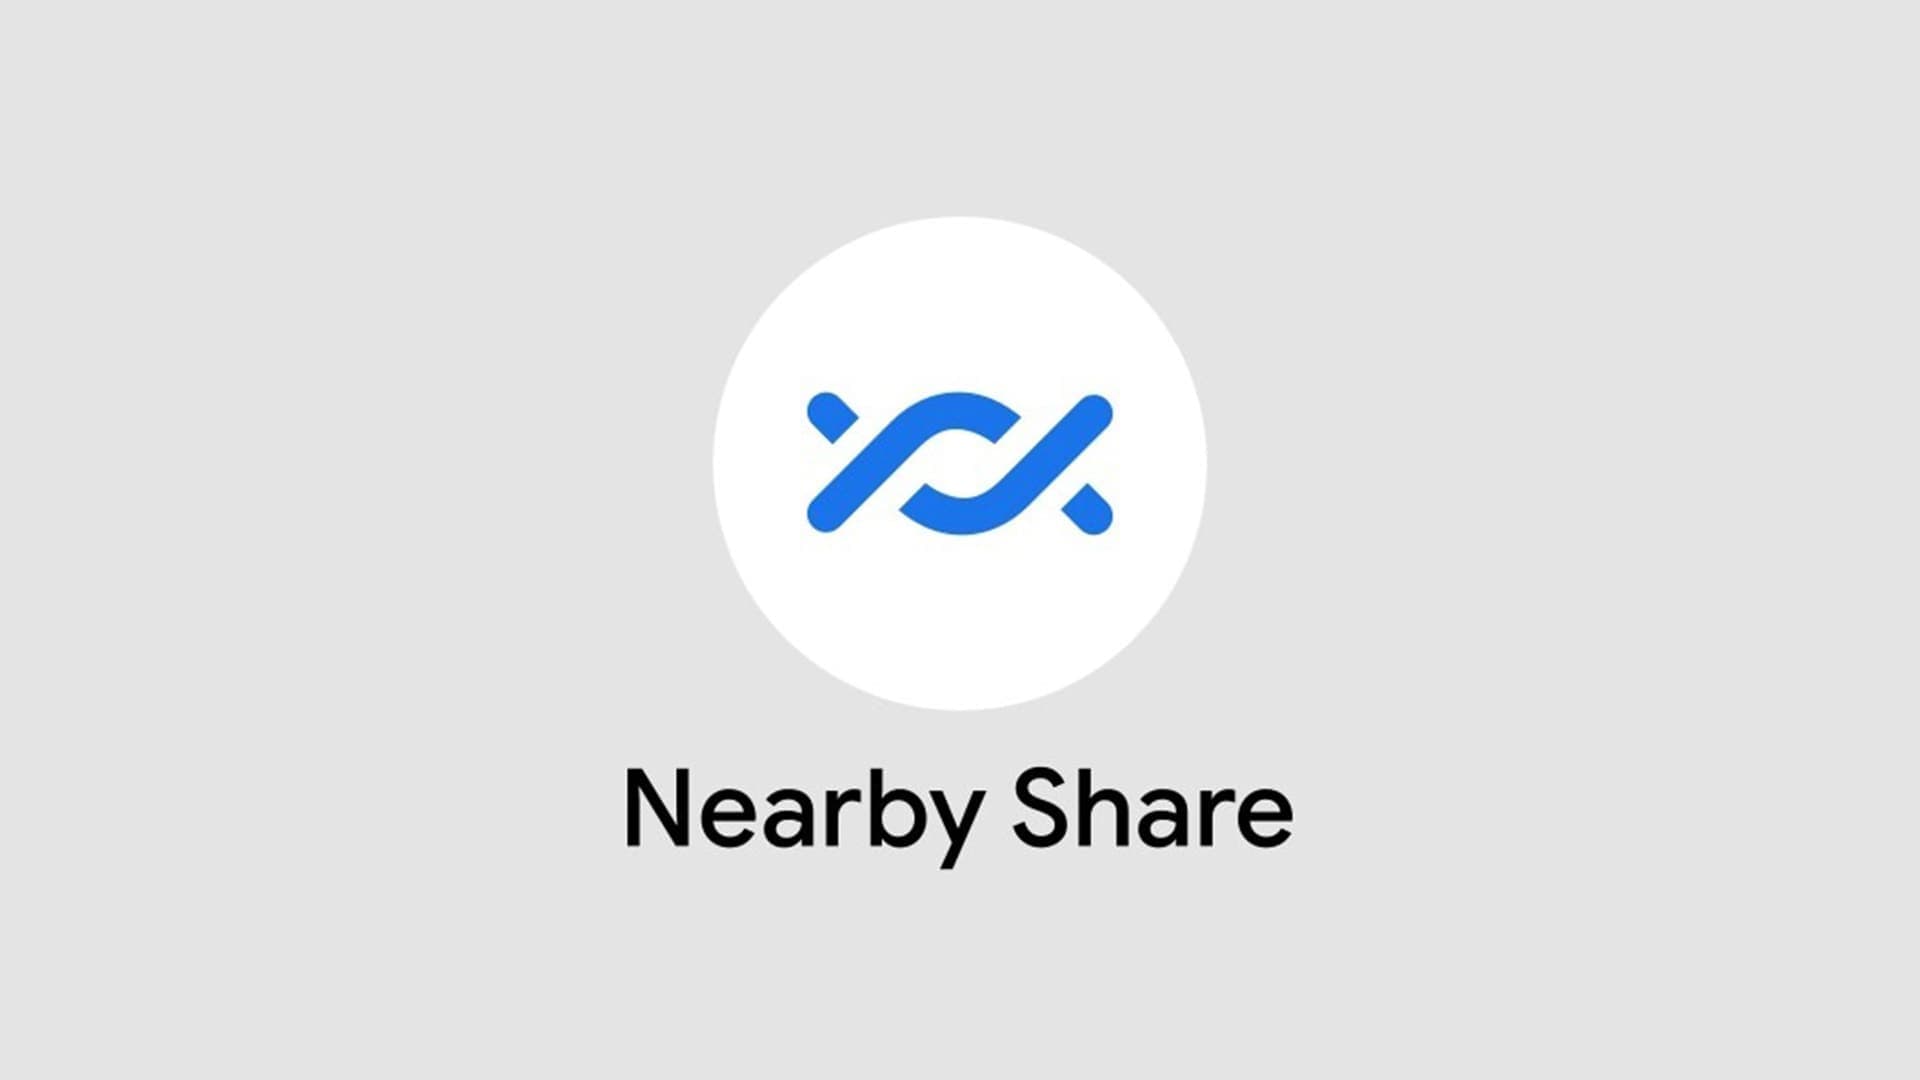 Tante novità in arrivo per Nearby Share: supporto ai gruppi e nuova UI (foto)